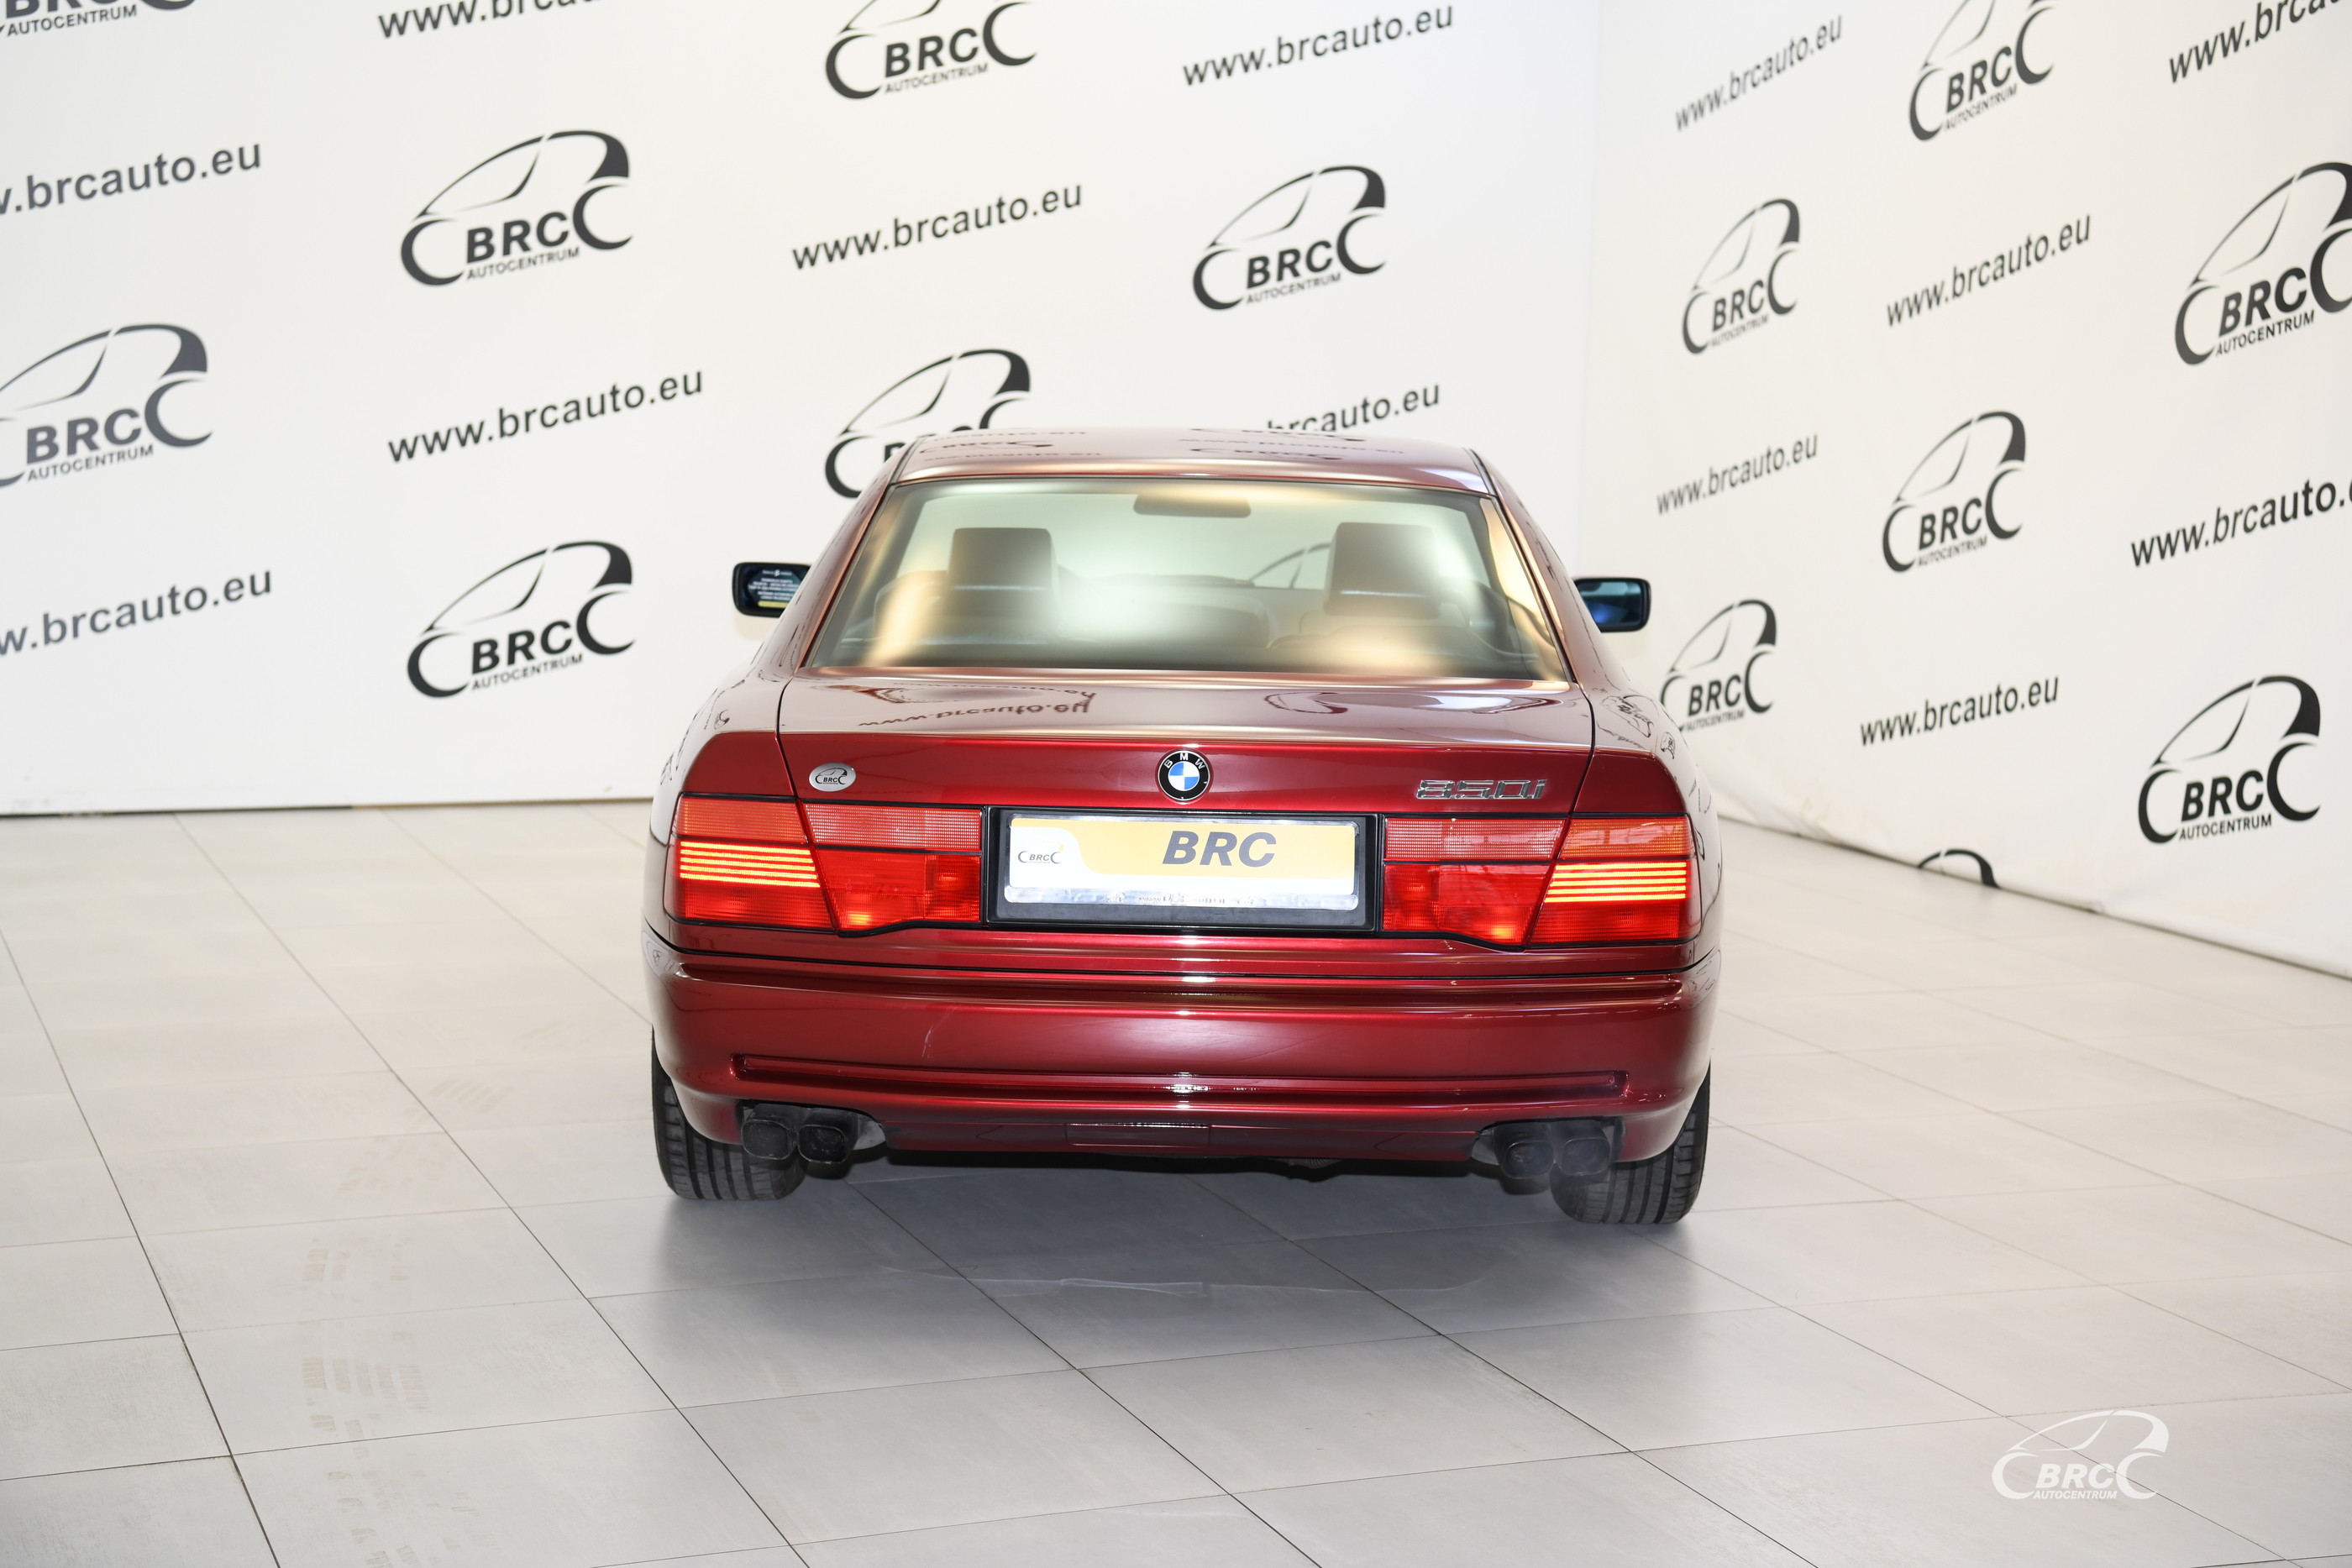 BMW 850 V12